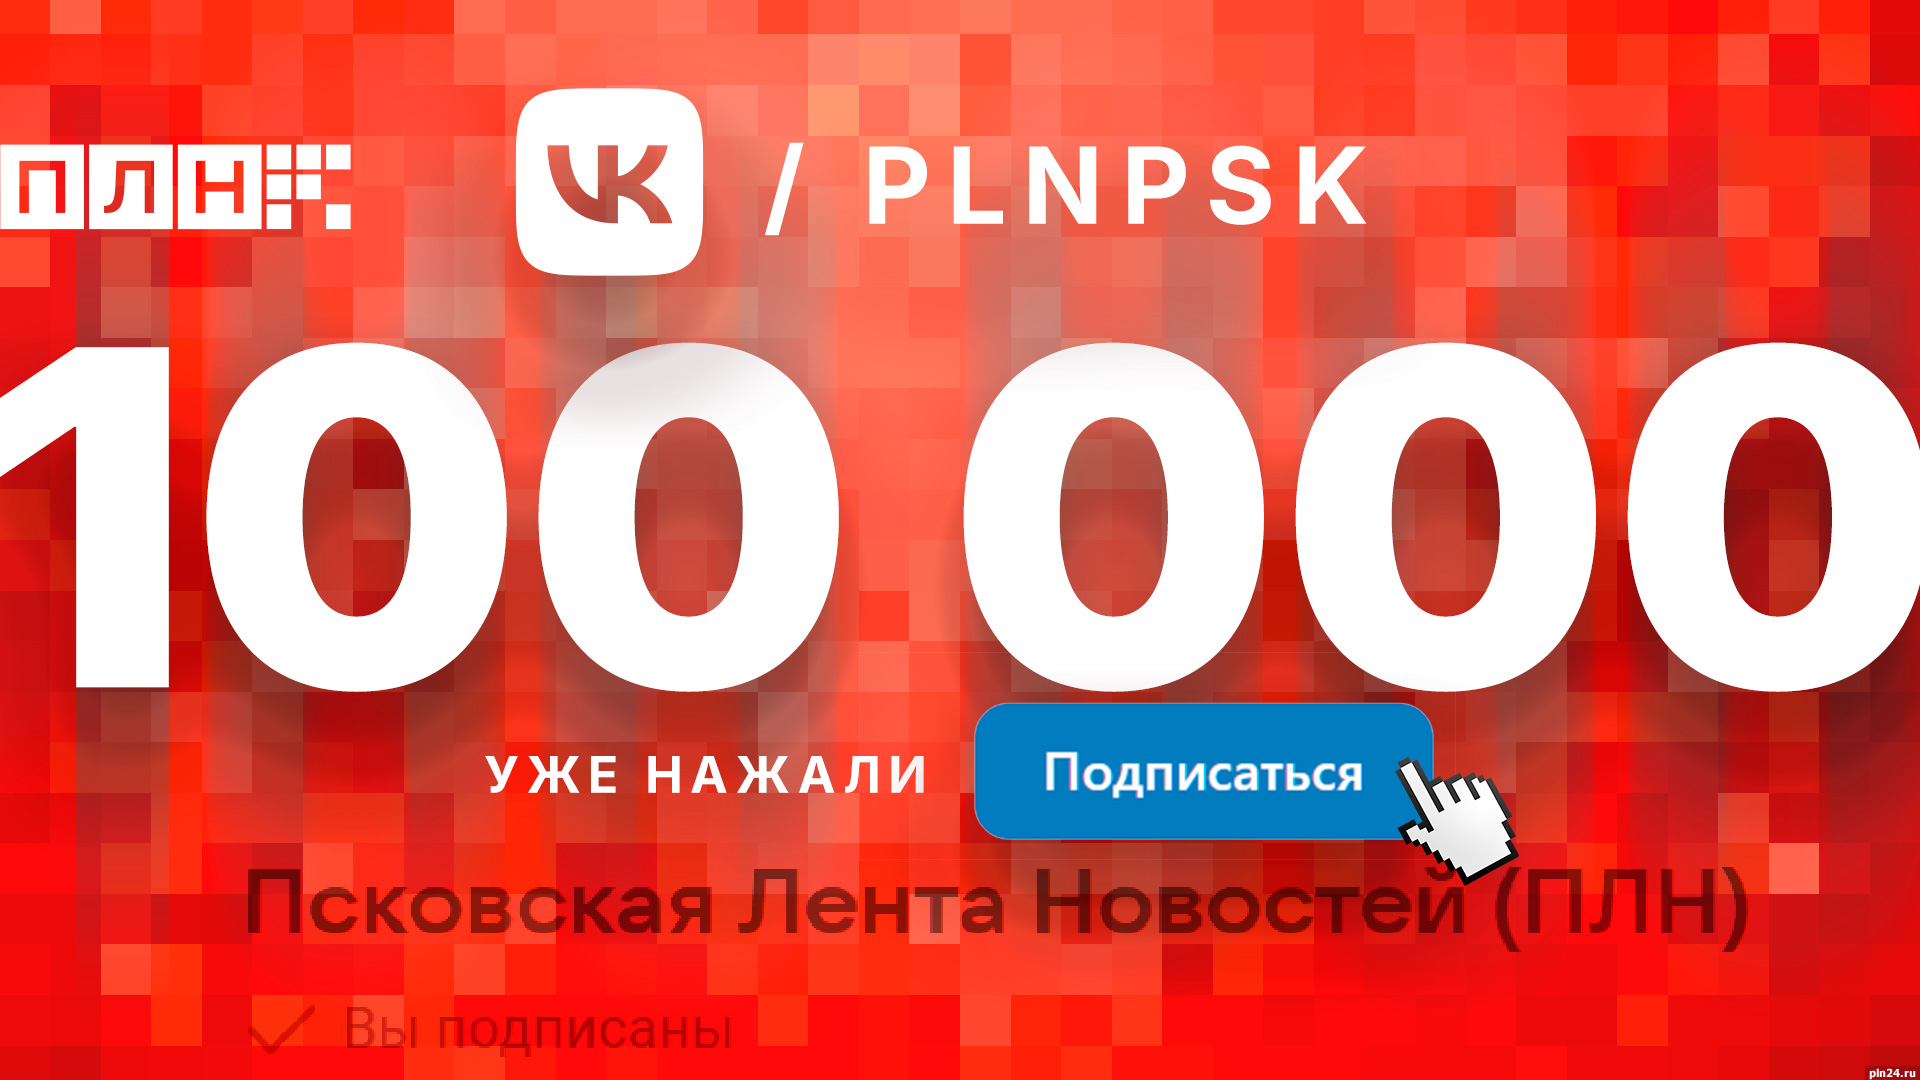 Число подписчиков группы Псковской Ленты Новостей во «ВКонтакте» превысило 100 тысяч